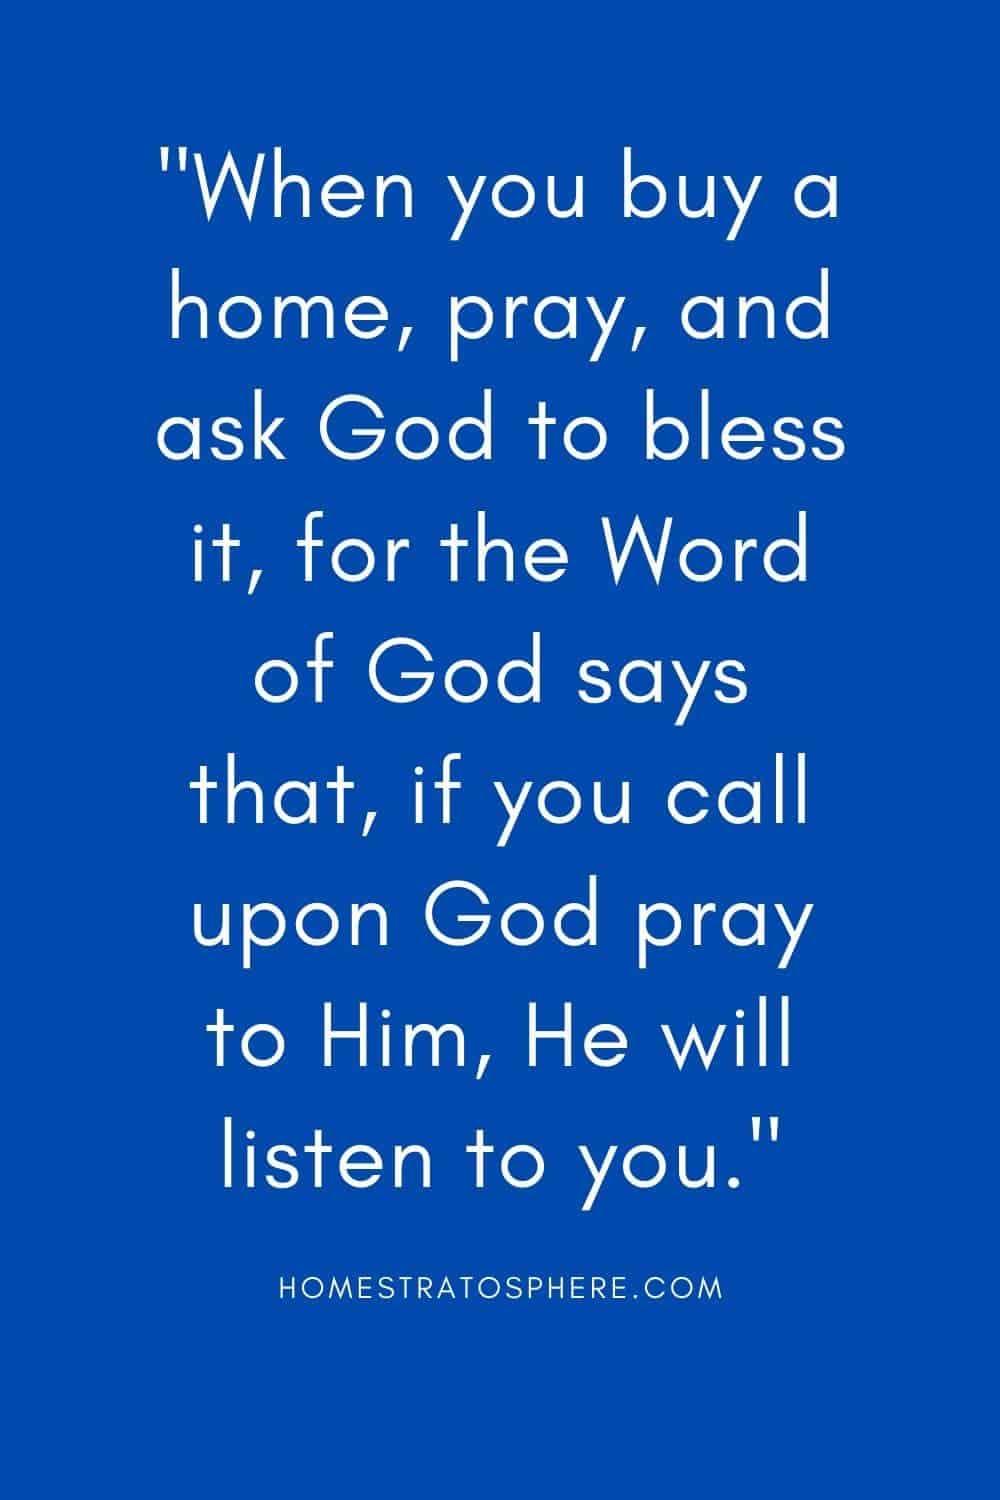 “当你买了房子，要祷告，求神赐福，因为神的话说，如果你求告神，祷告他，他必听你的。”